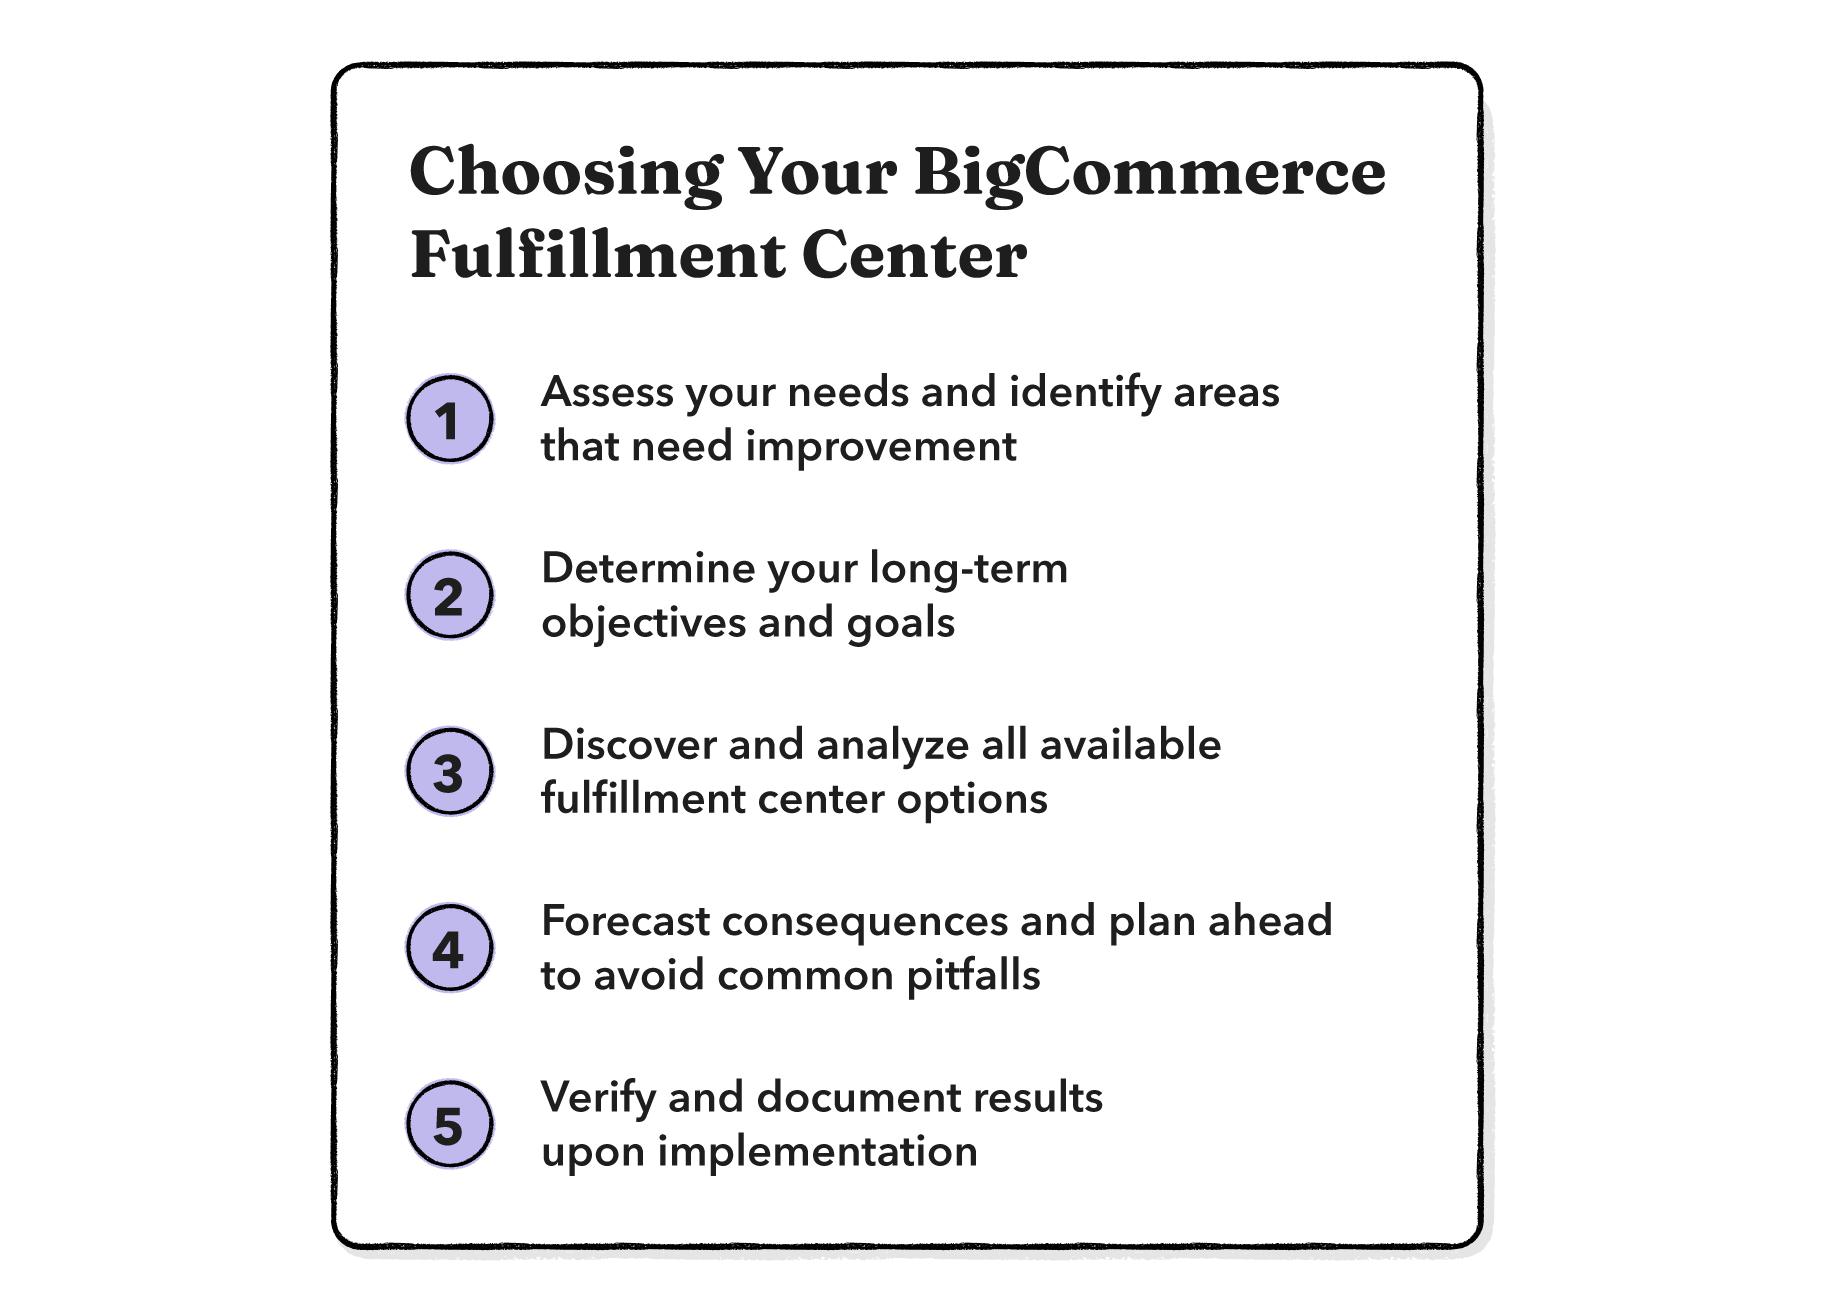 steps for choosing a BigCommerce fulfillment center